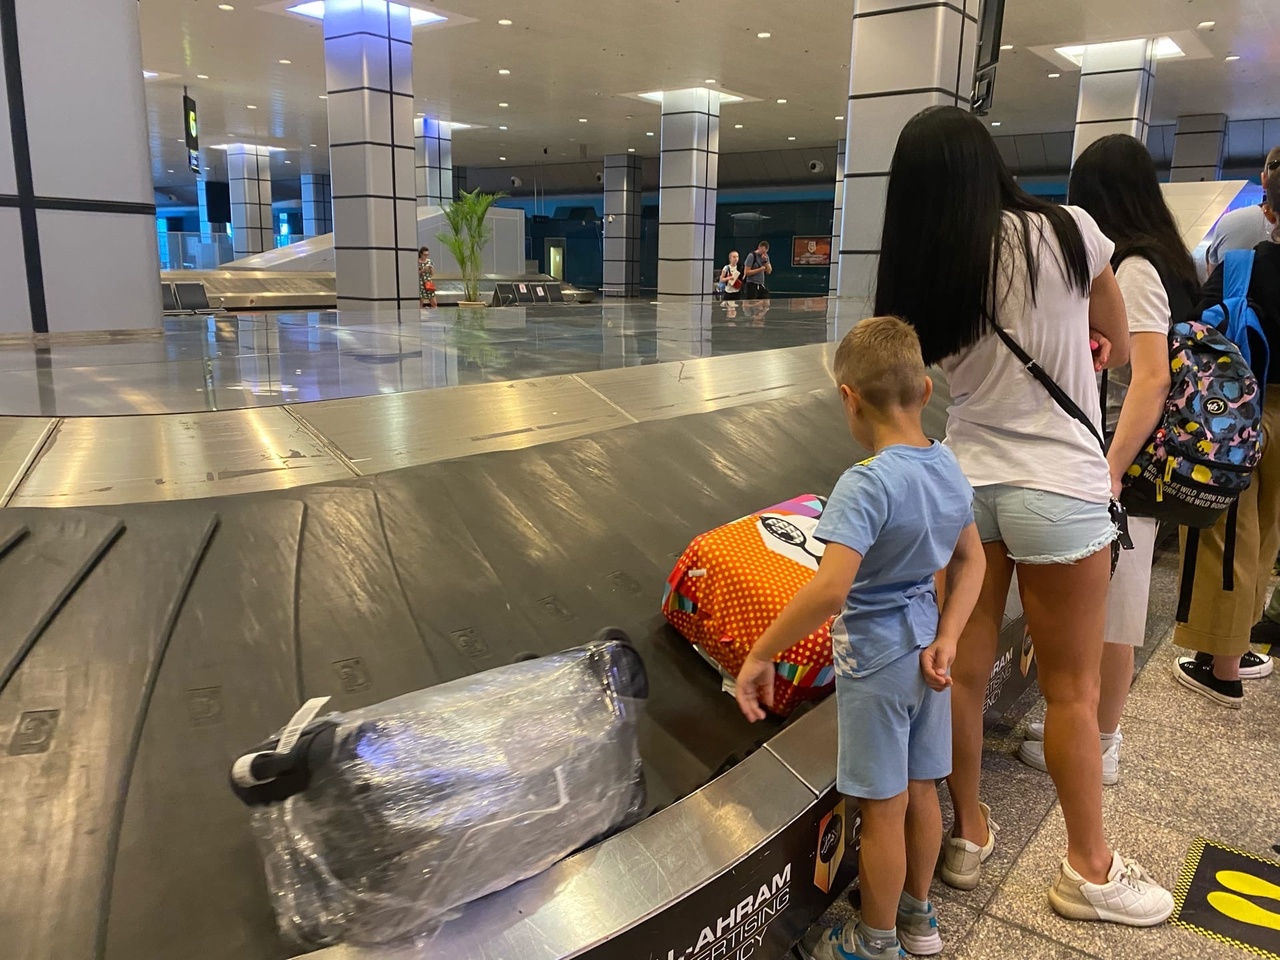 Из-за технического сбоя в авиакомпании чебоксарка с ребенком потеряла багаж и обратные билеты